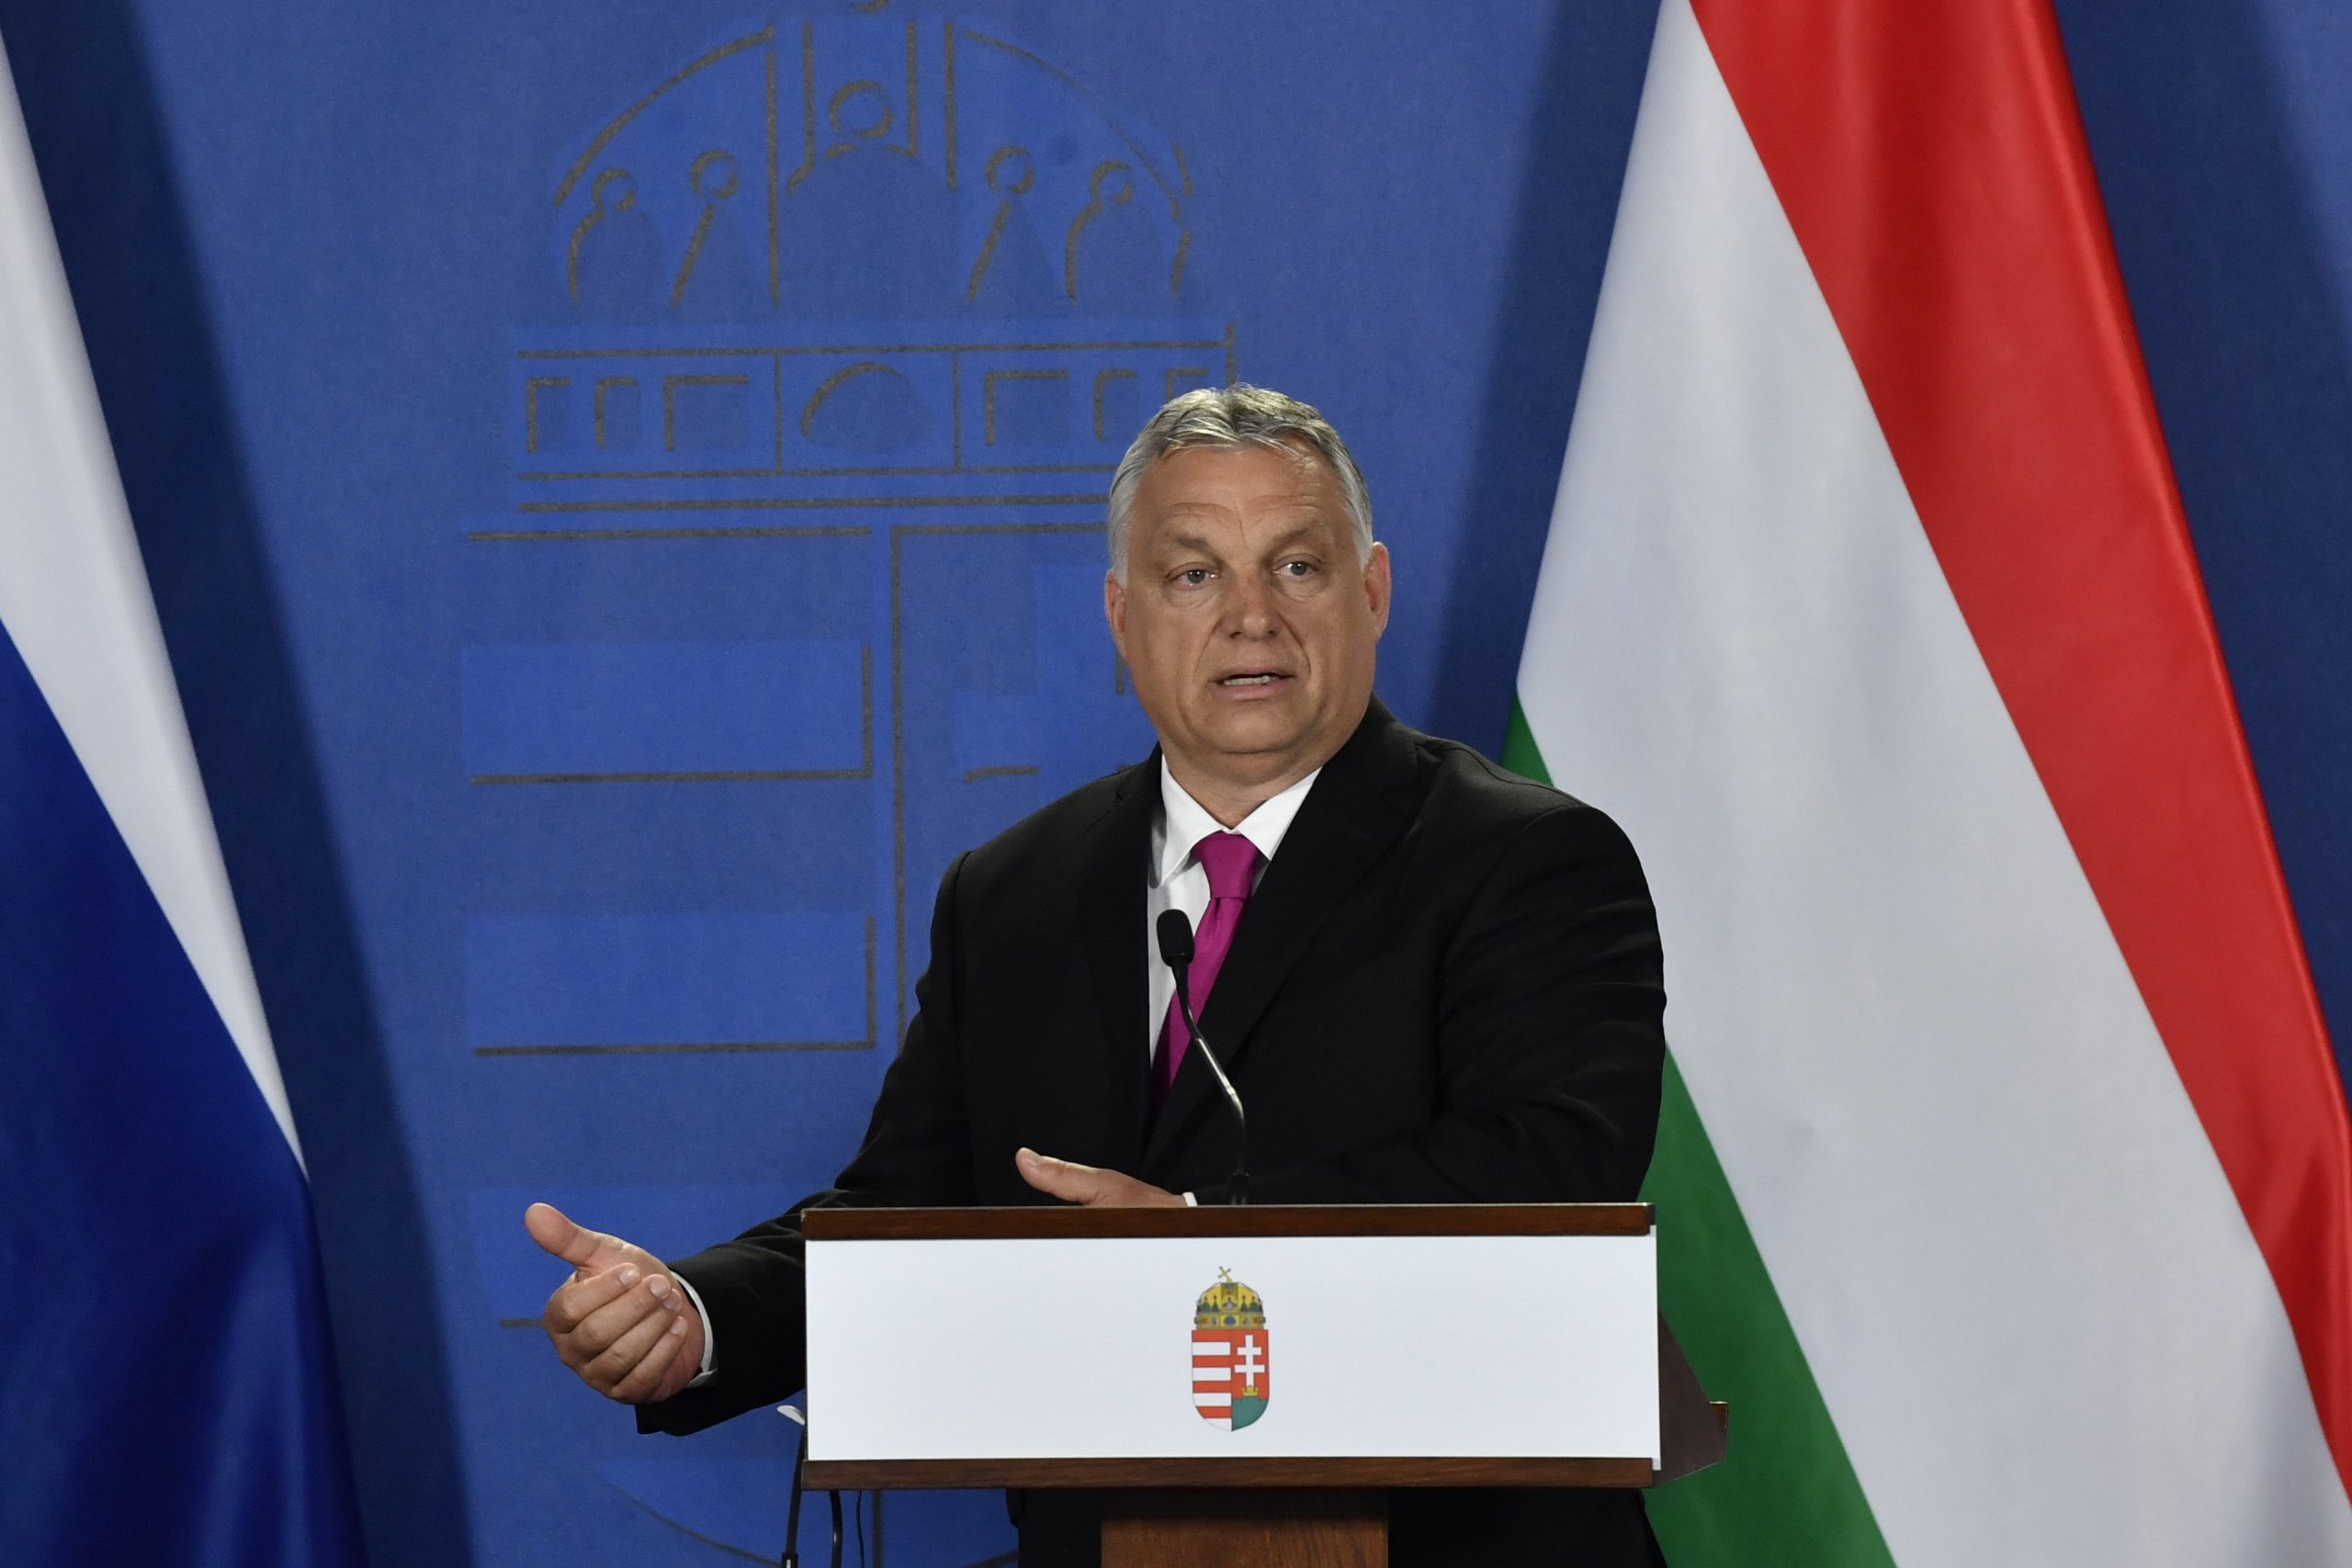 Budapost: Orbán kündigt Referendum über Kinderschutzgesetz an